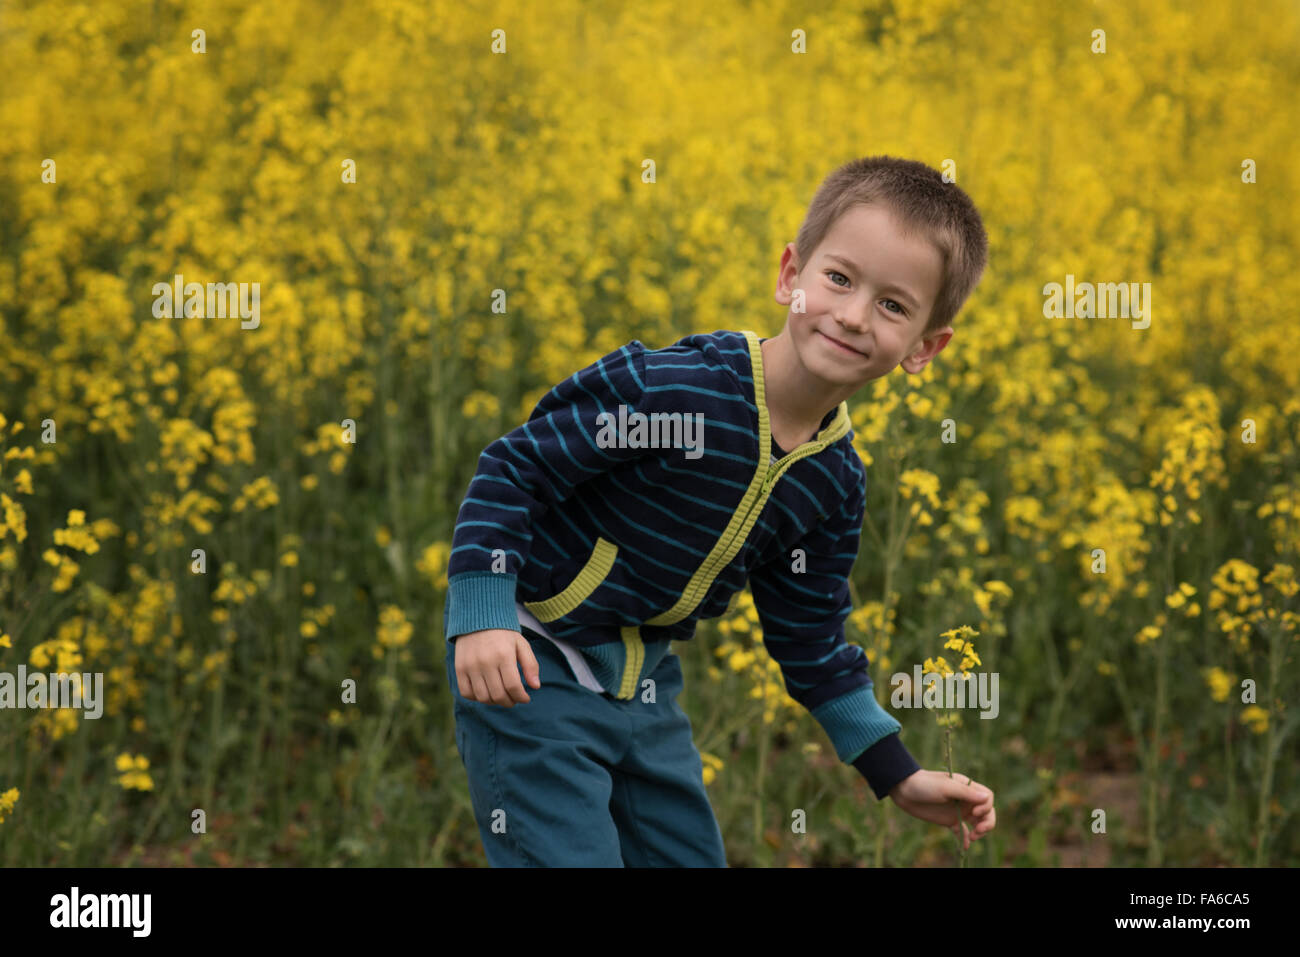 Smiling boy messing à propos de champ de colza Banque D'Images